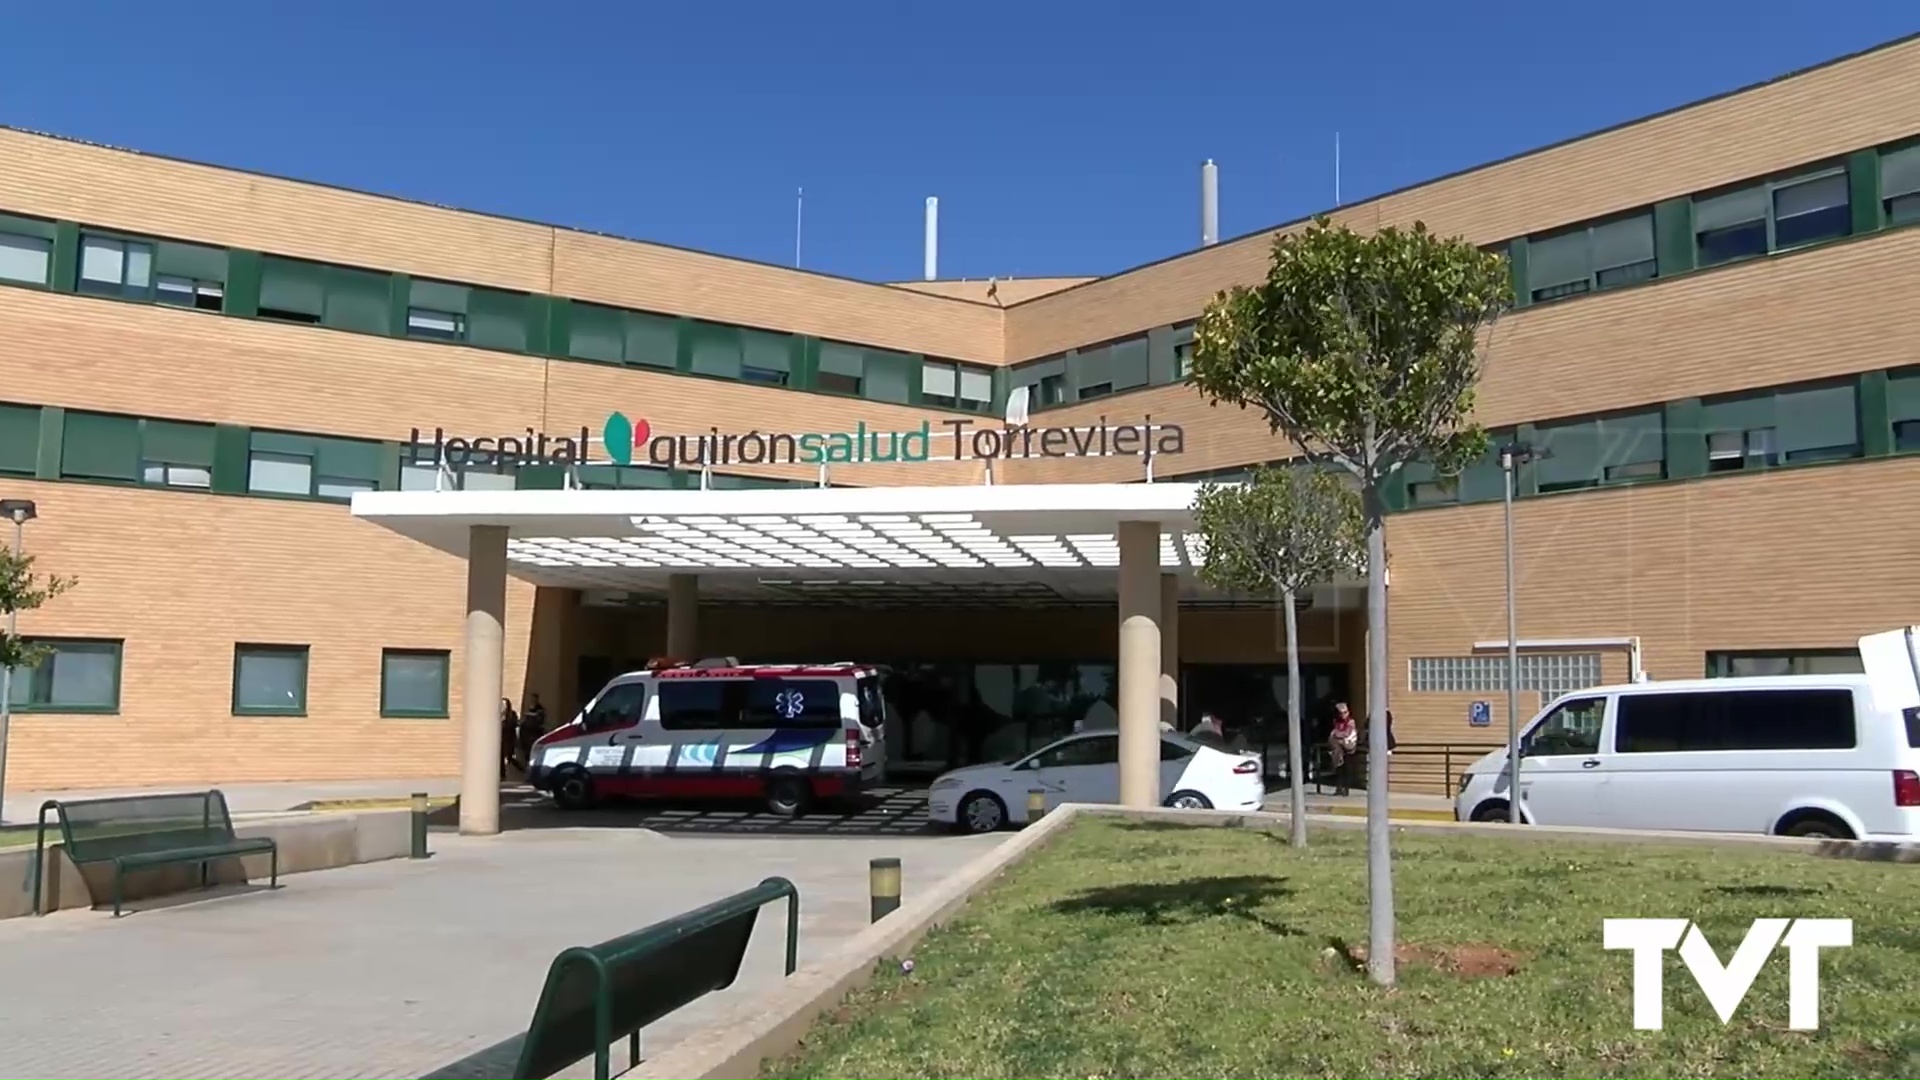 Imagen de Asaltan y roban en la capilla del hospital QuirónSalud de Torrevieja 